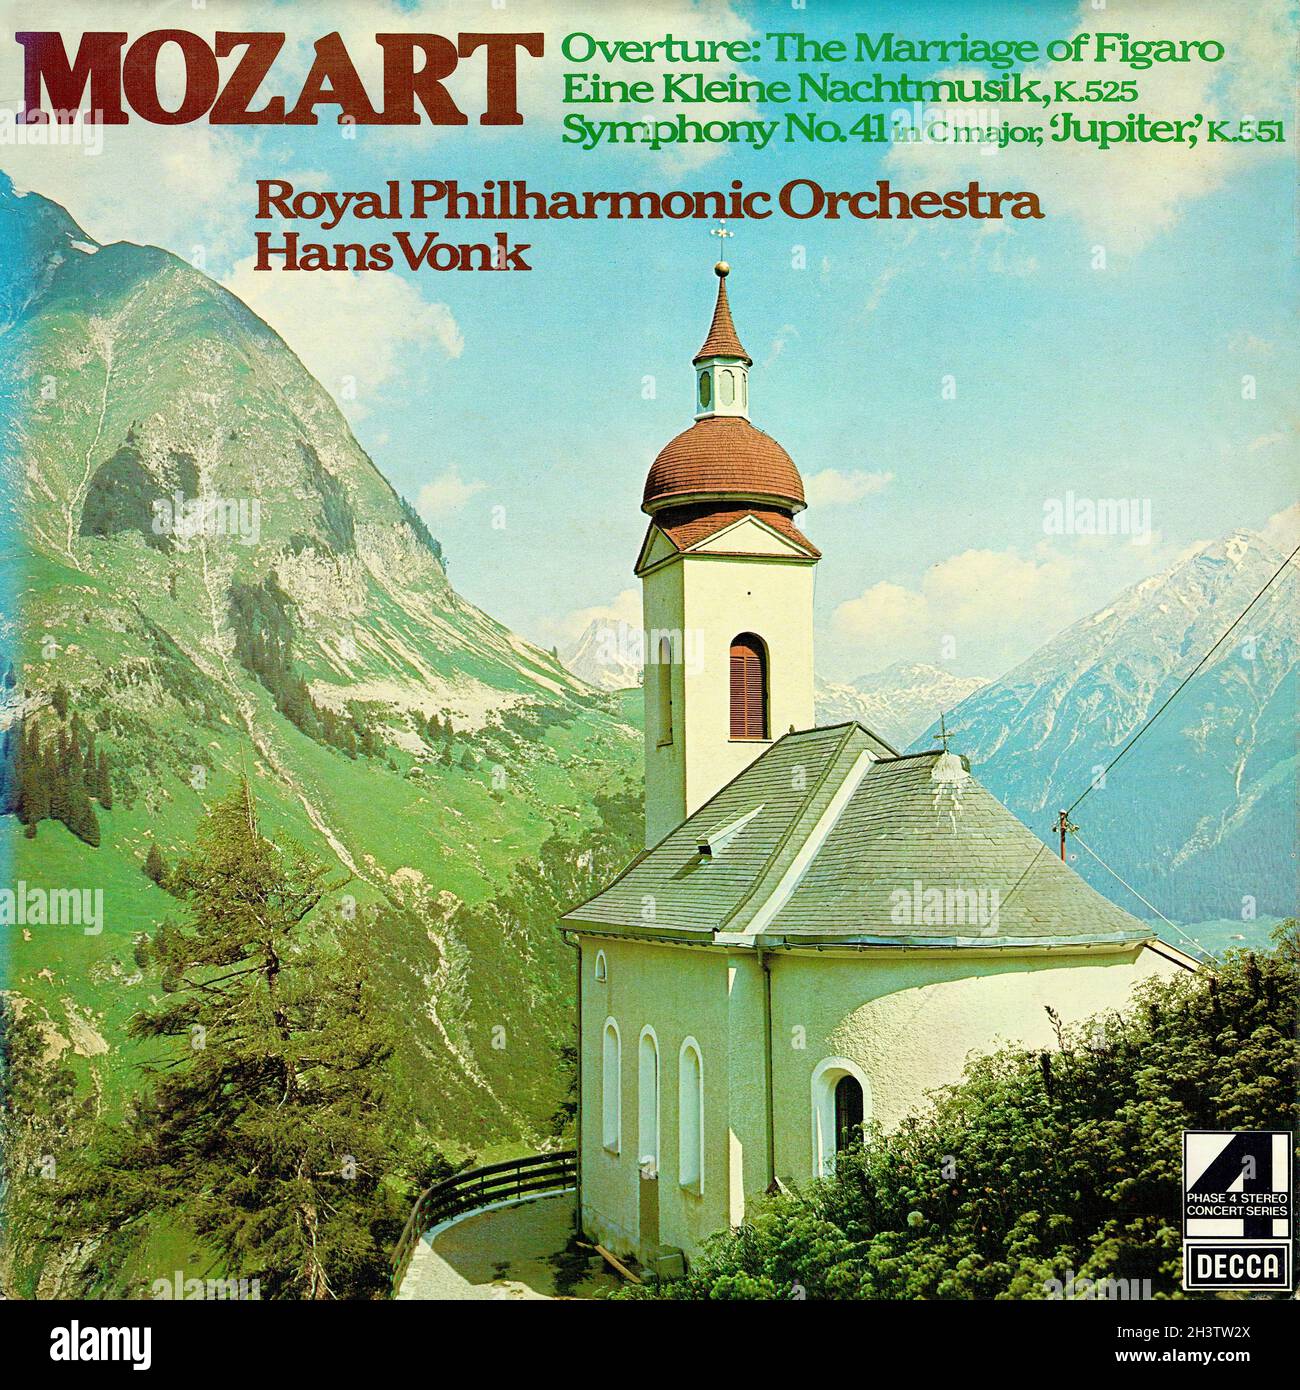 Mozart Symphony 41 â €¢ Ouverture Marriage of Figaro â €¢ eine kleine Nachtmusik - Vonk RPO London Phase 4 1 - Klassische Musik Vintage Vinyl Schallplatte Stockfoto